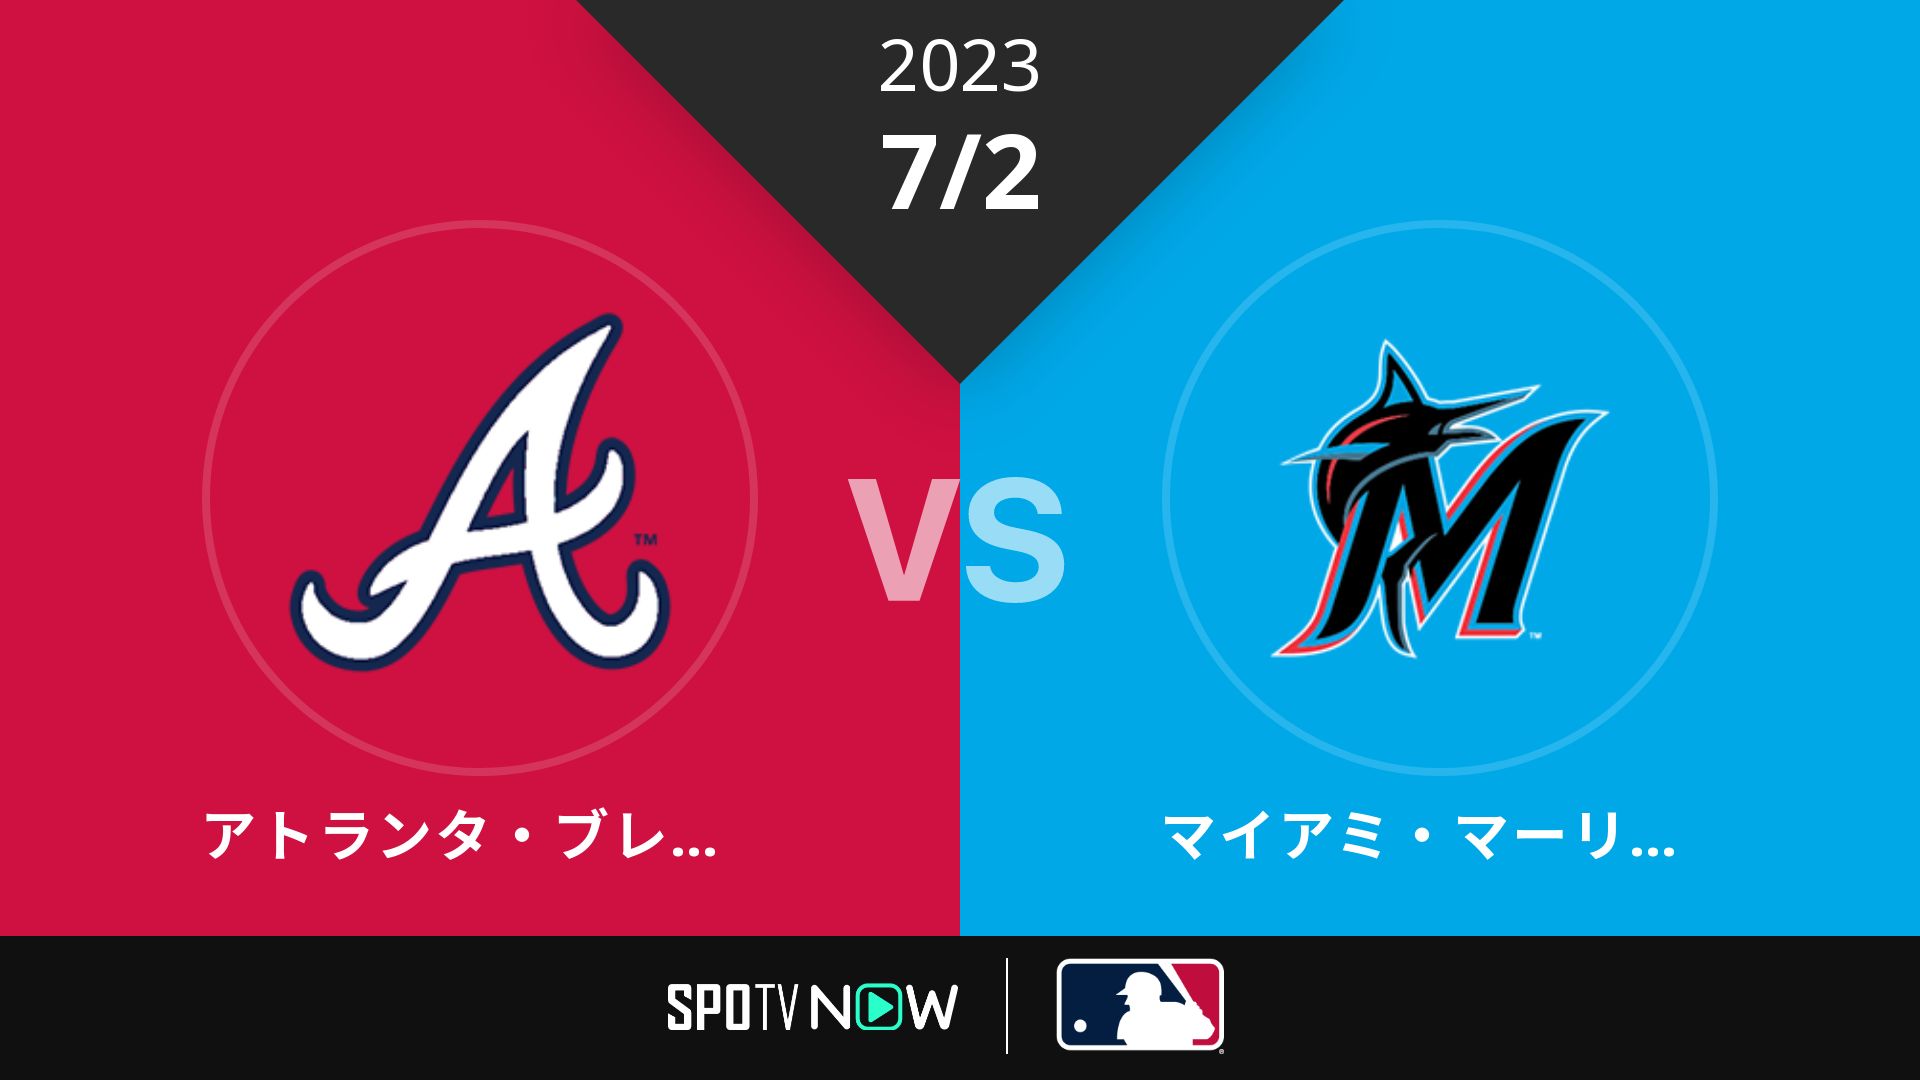 2023/7/2 ブレーブス vs マーリンズ [MLB]